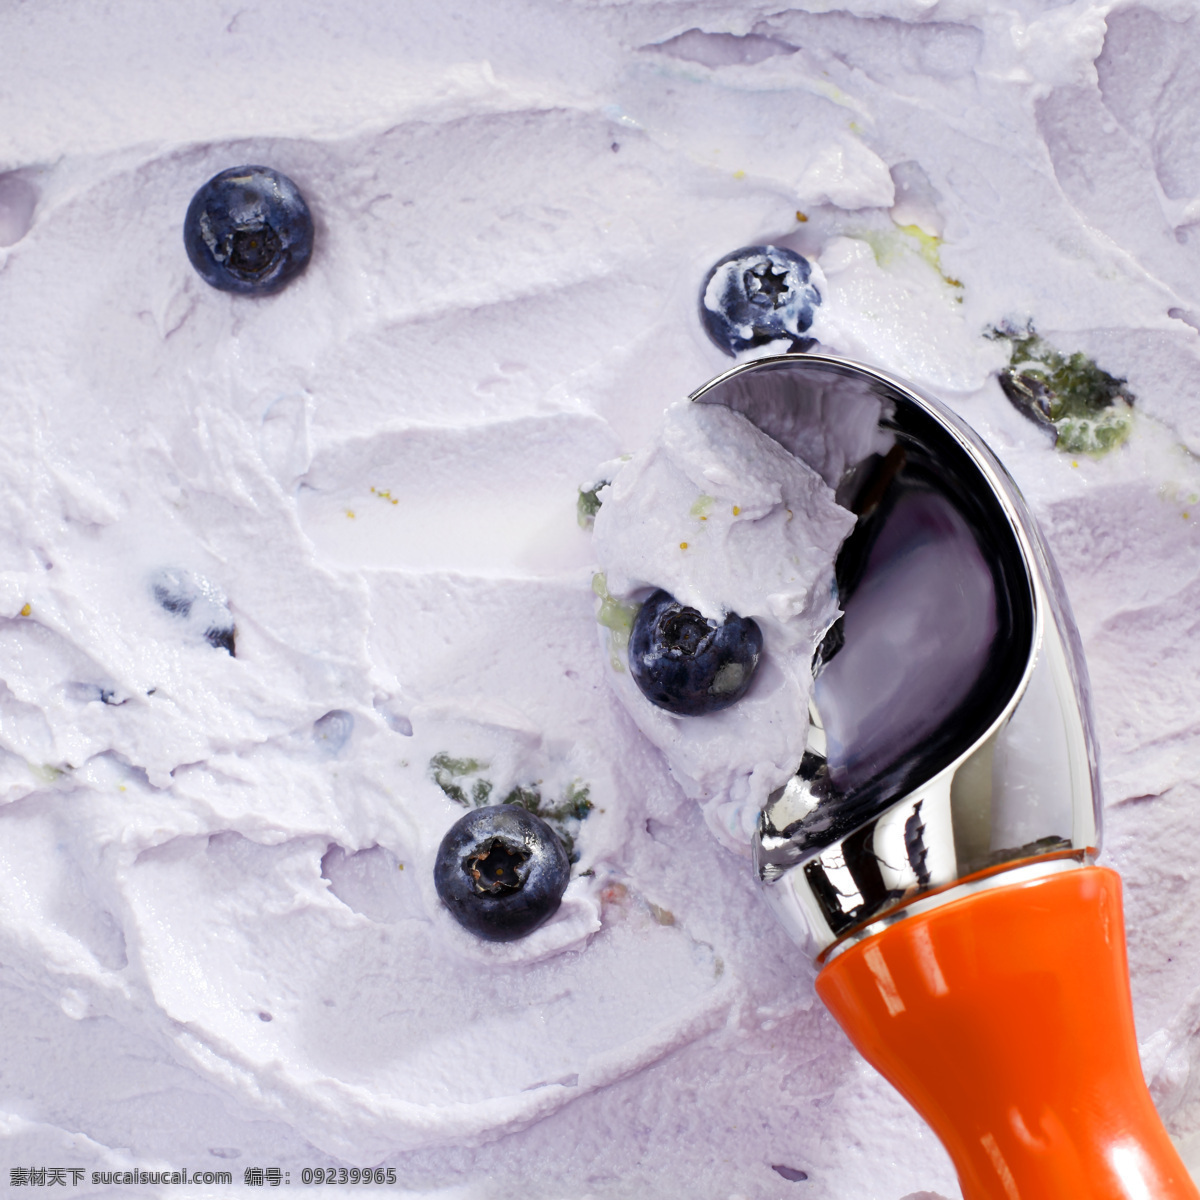 蓝莓 果酱 冰淇淋 蓝莓冰淇淋 冰激凌 甜品美食 食物摄影 美味 美食图片 餐饮美食